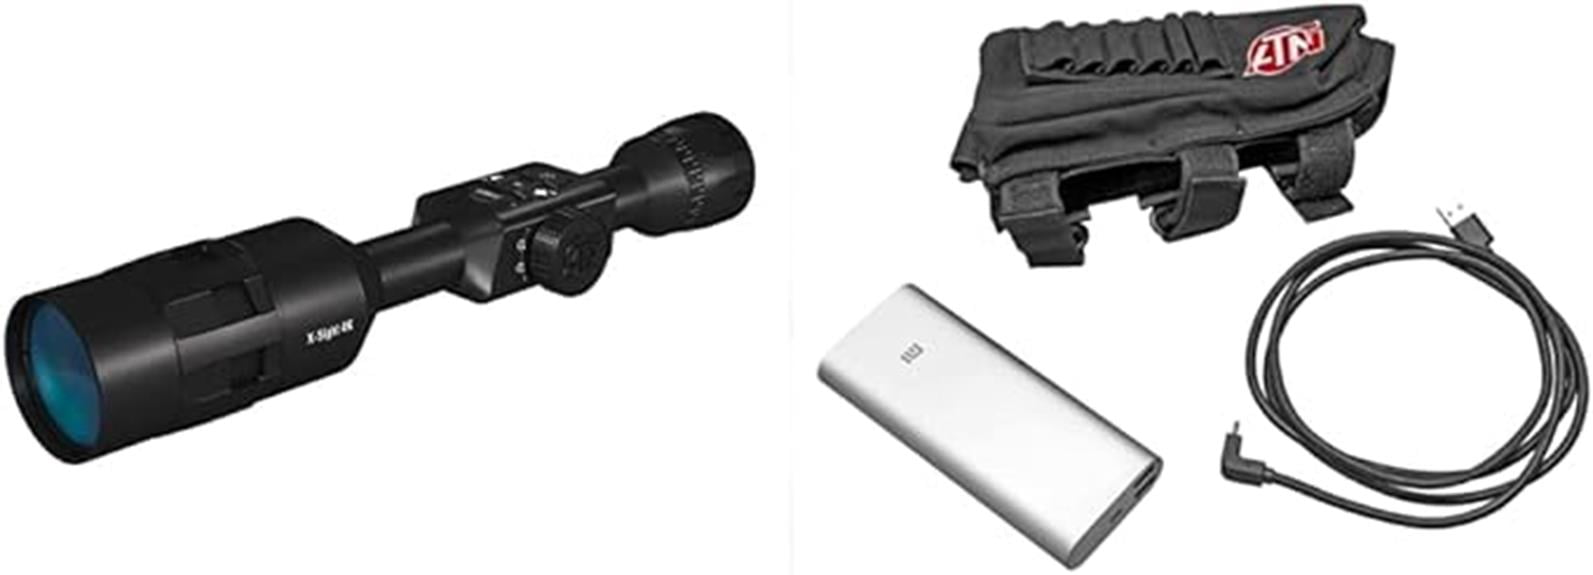 atn x sight 4k pro hunting scope kit